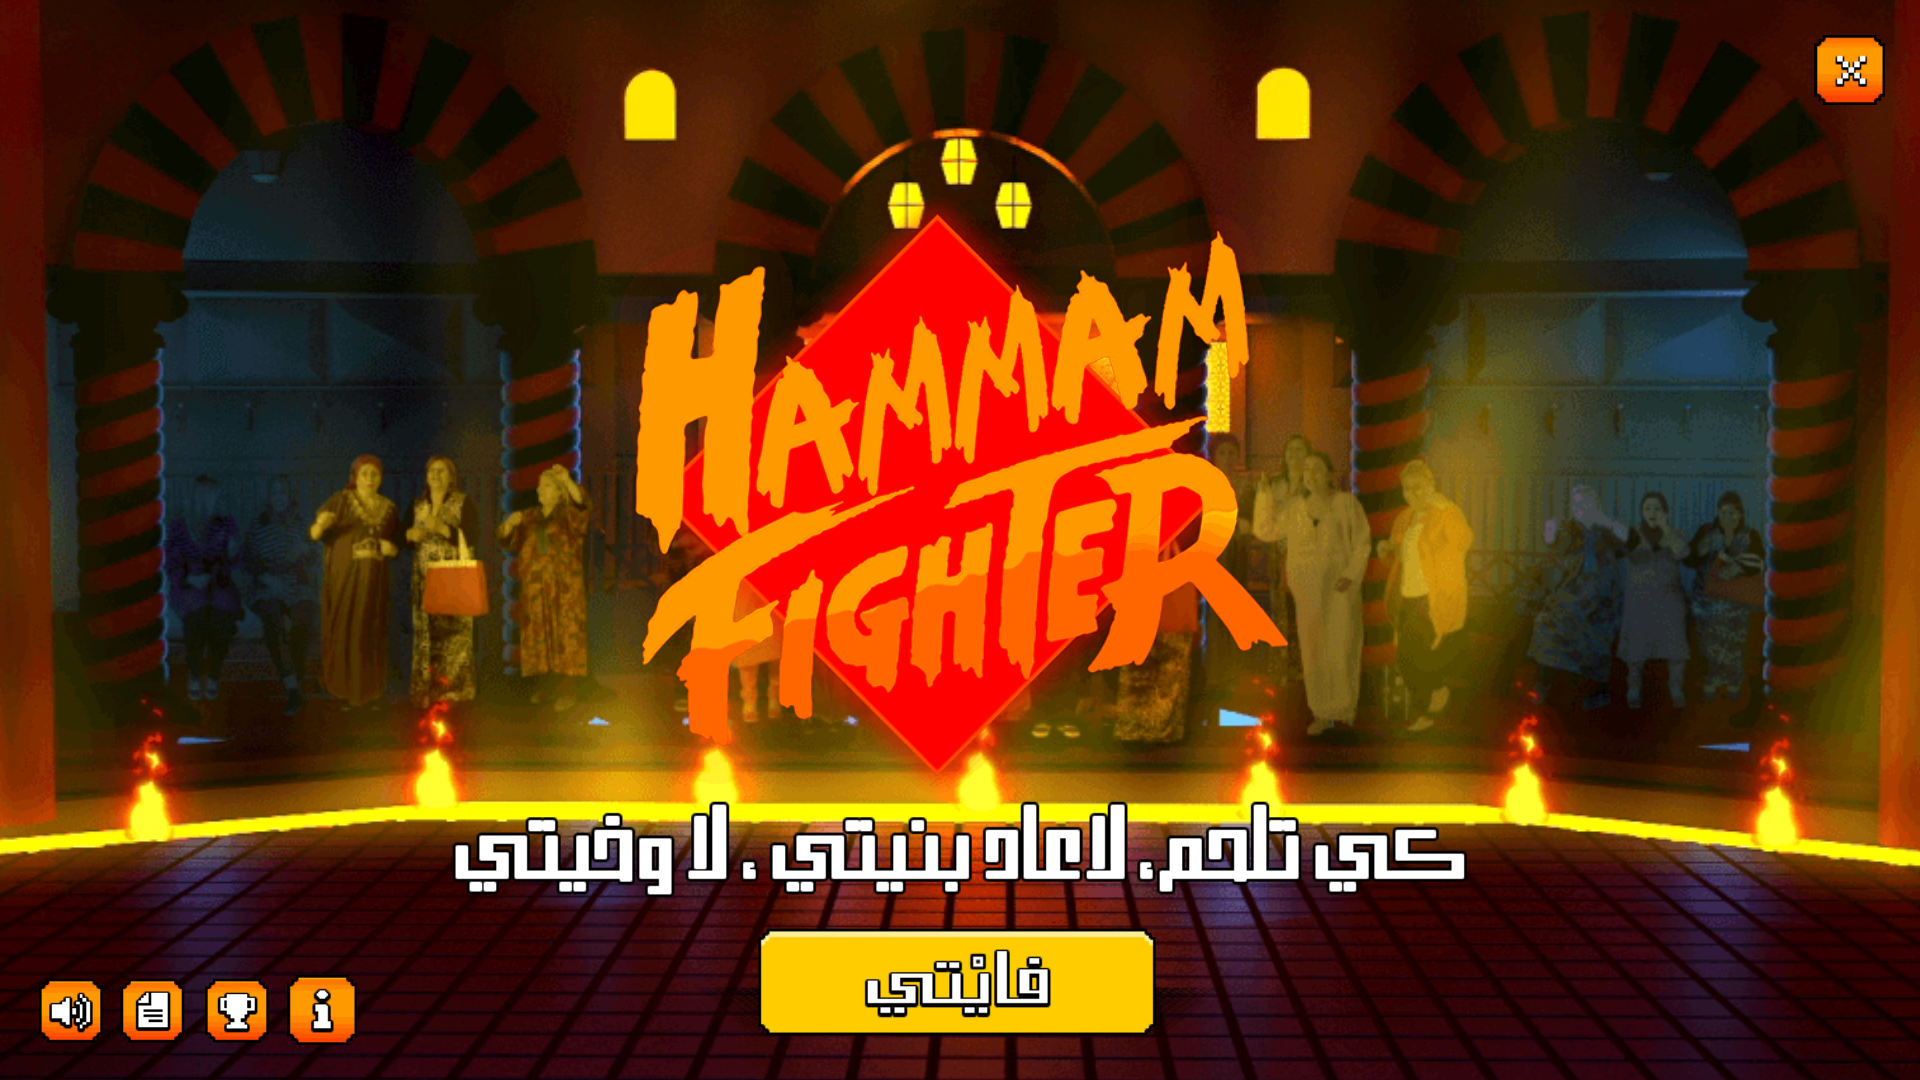 Screenshot 1 of Luchador de hammam 4.0